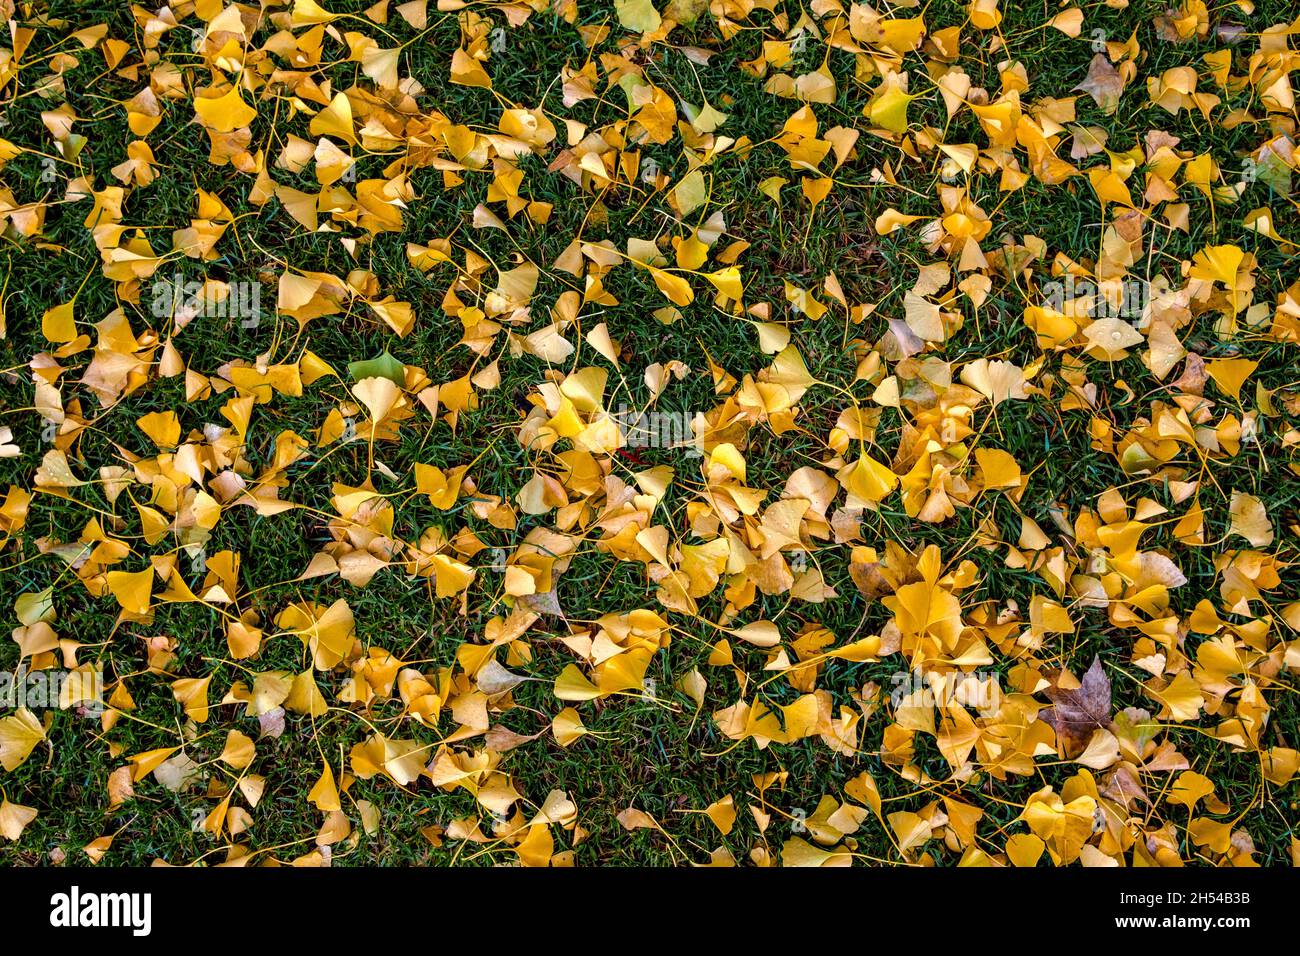 Vista superior de un campo de hierba en el que se encuentran dispersas muchas hojas amarillas de otoño Foto de stock